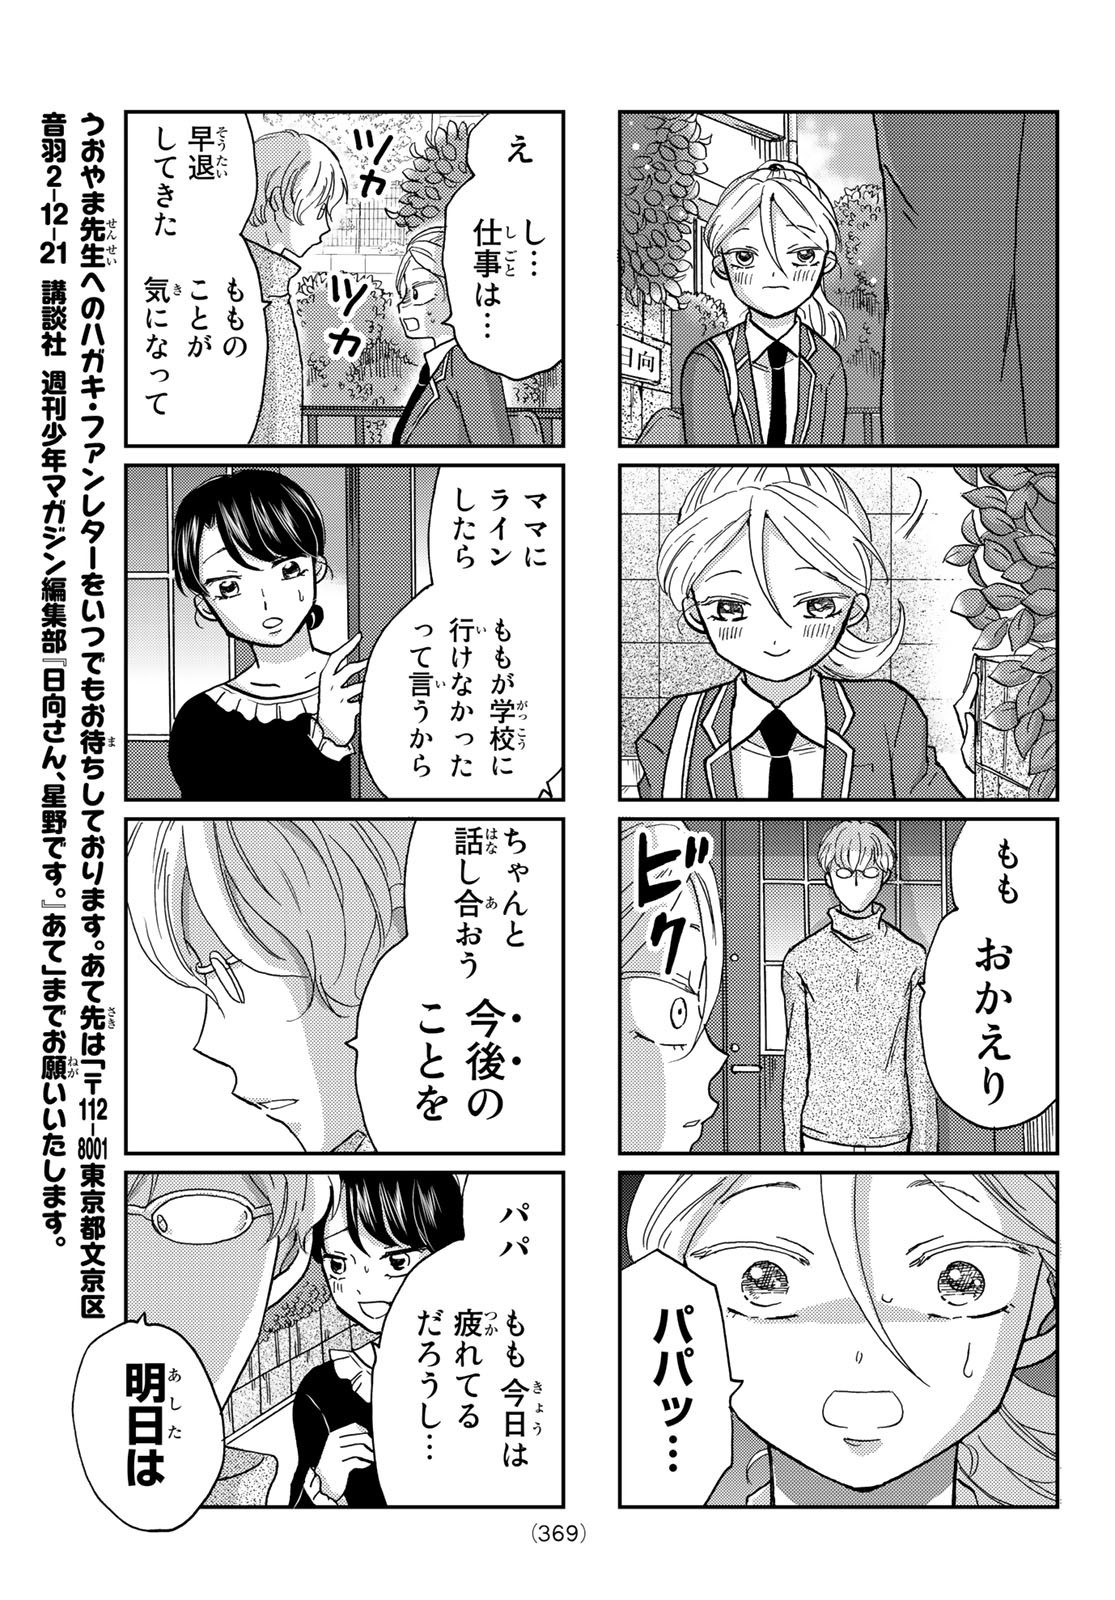 Hinata-san, Hoshino desu. - Chapter 021 - Page 5